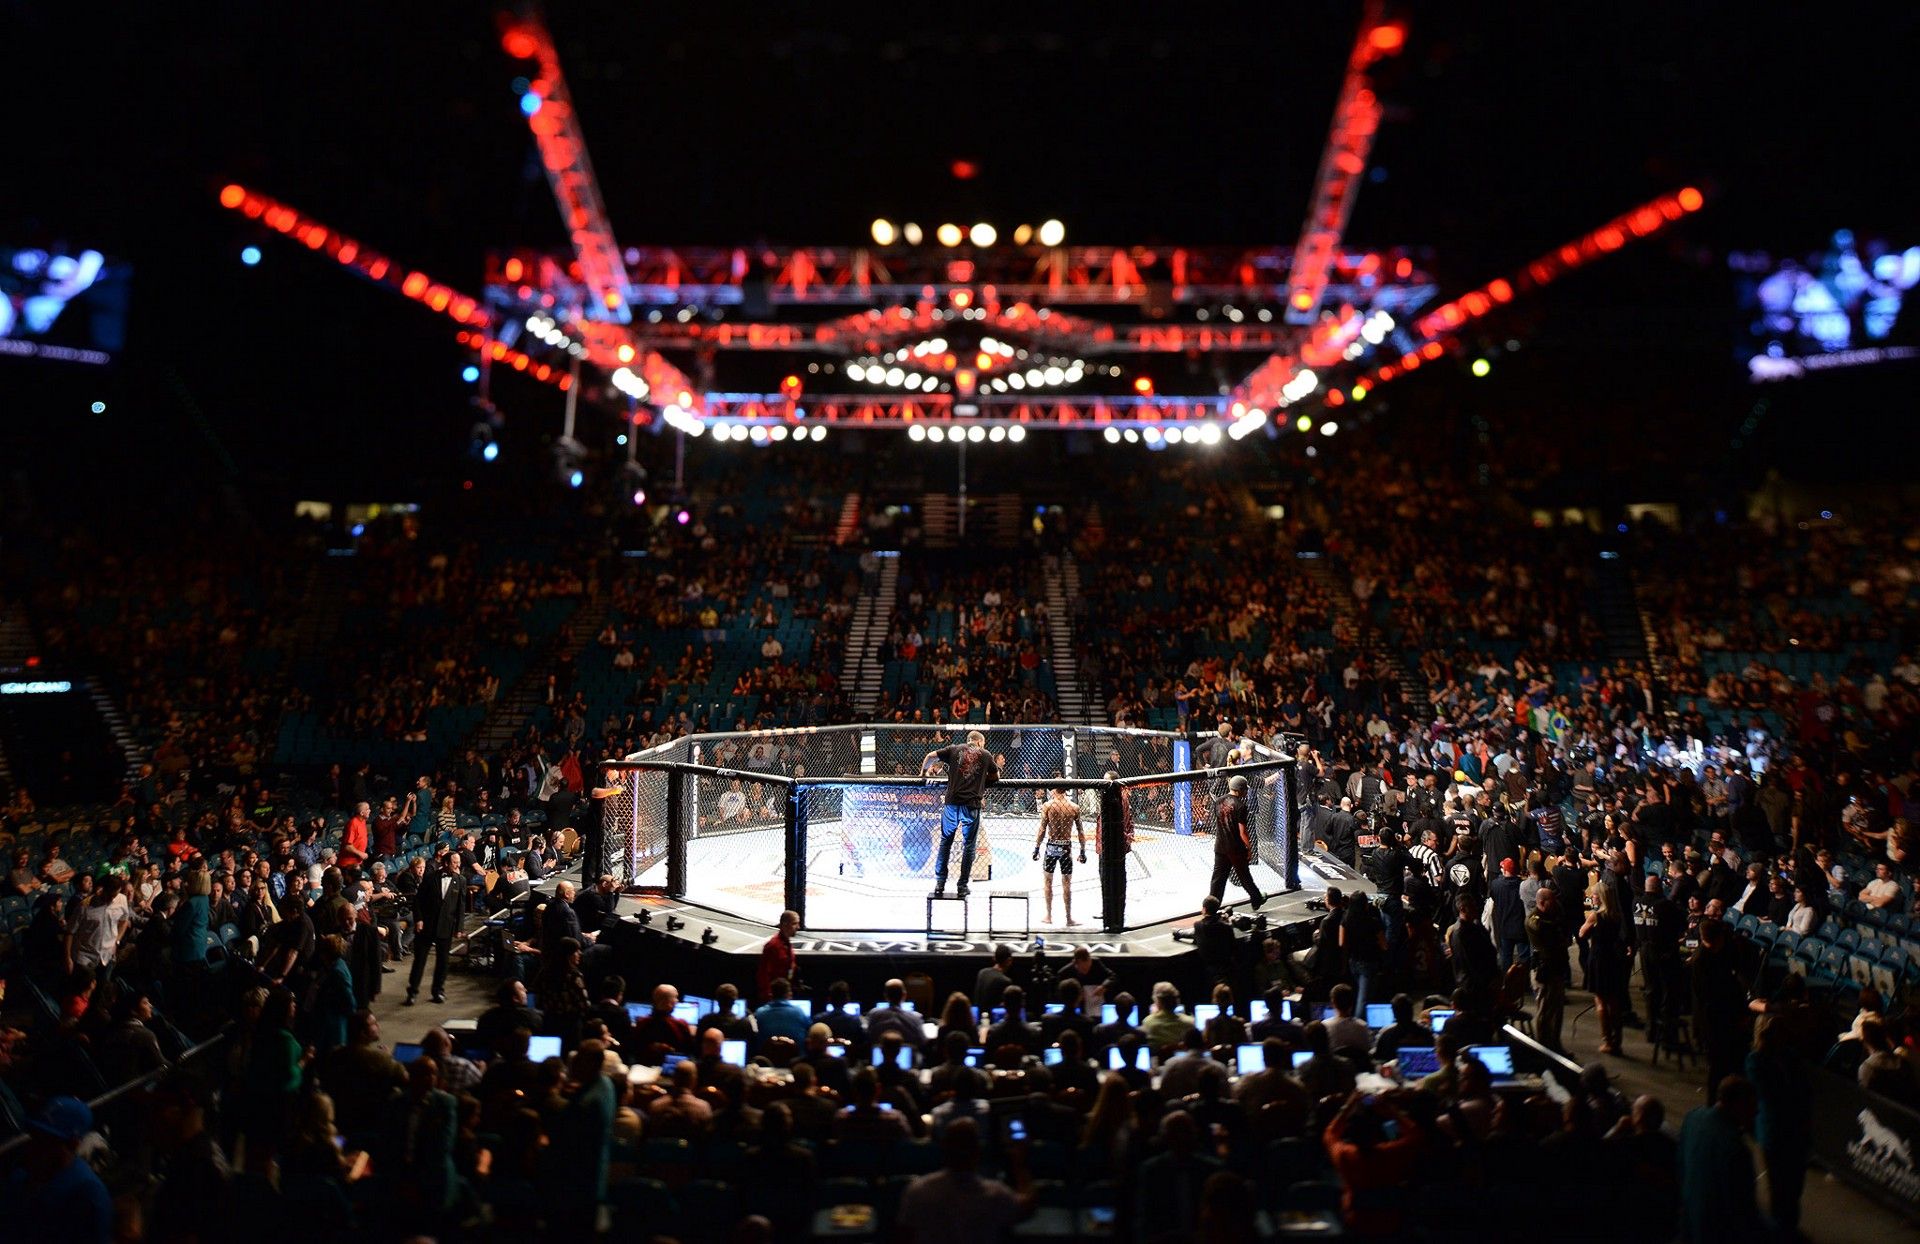 mma streaming: mma organisationen und ufc wettanbieter, die UFC live streaming service bieten